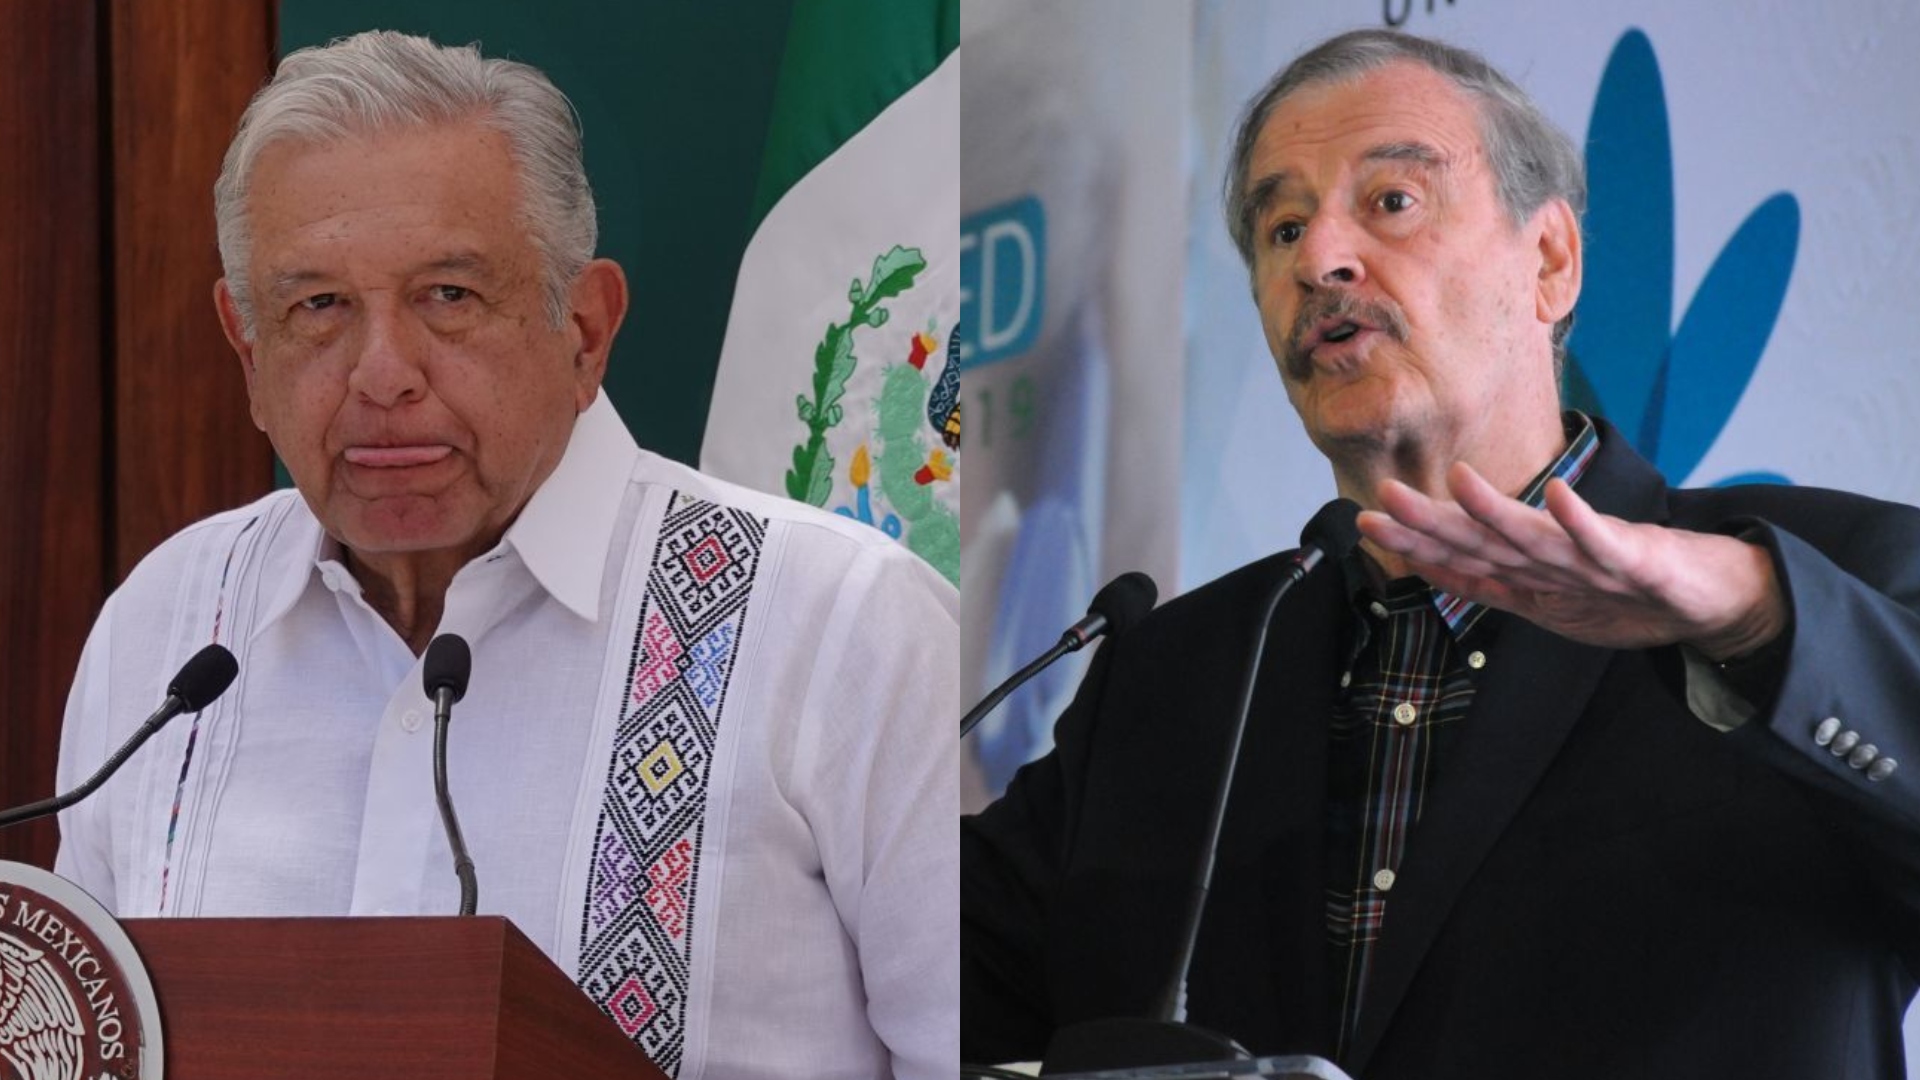 Vicente Fox arremetió contra López Obrador por polémica de Donald Trump: “Chocheando o senil”